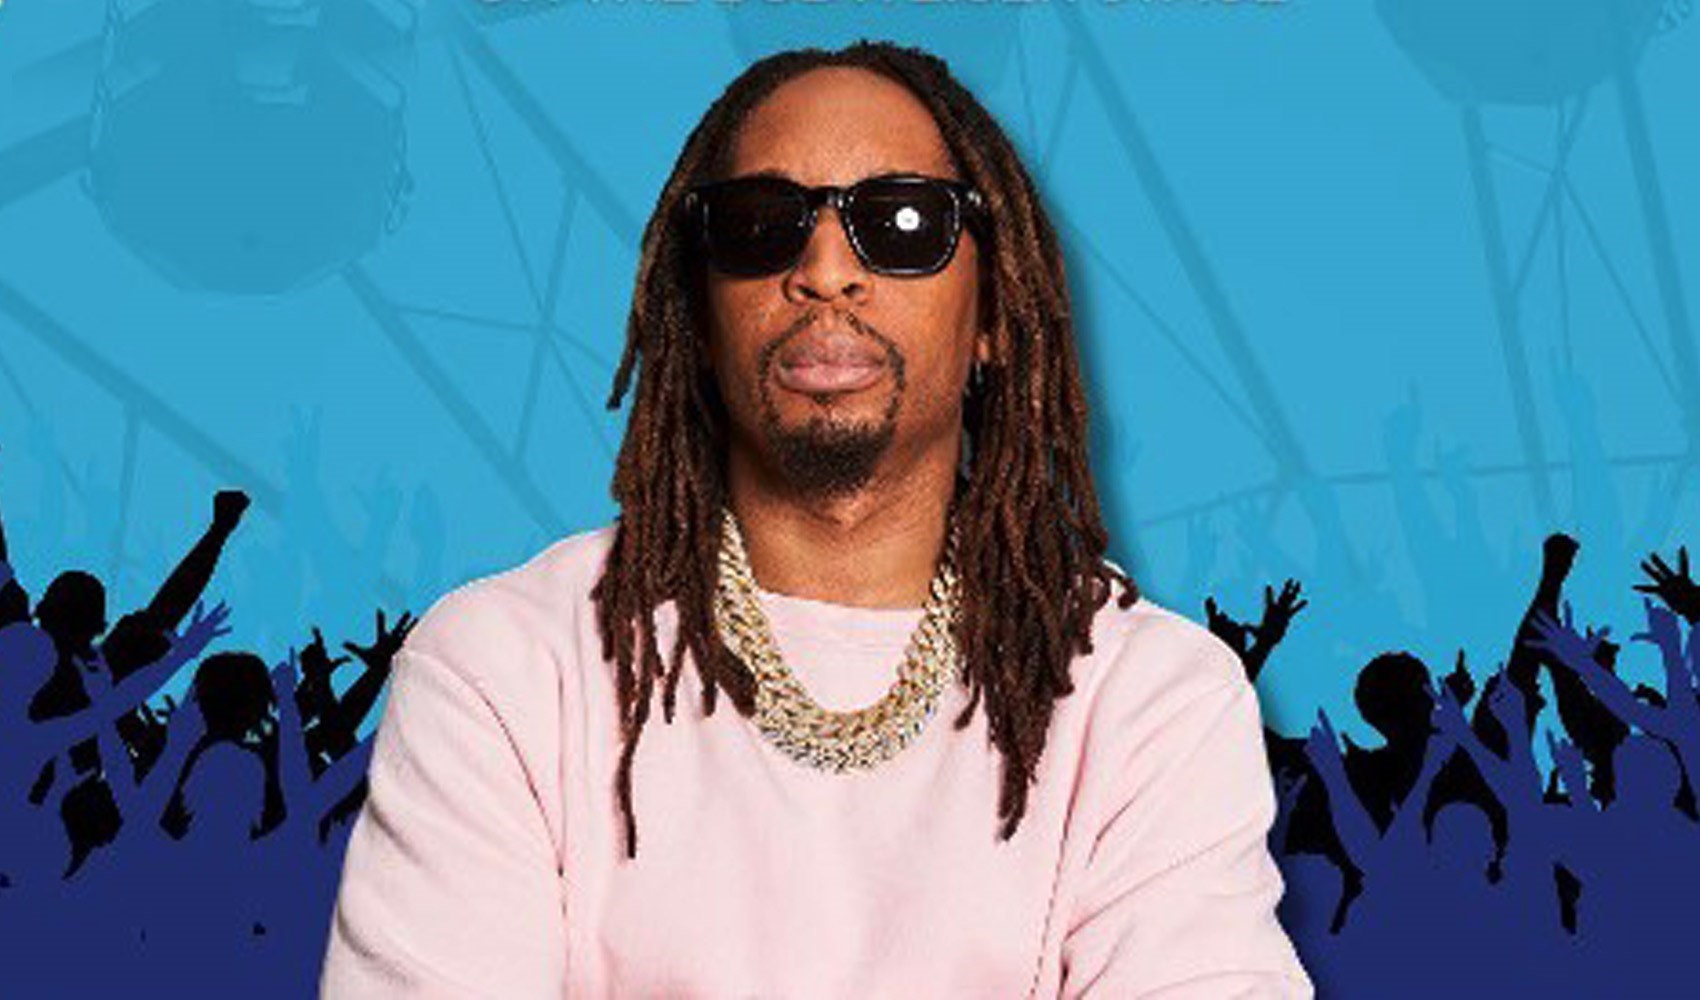 Amerikalı rapçi Lil Jon, ramazan ayında Müslüman oldu